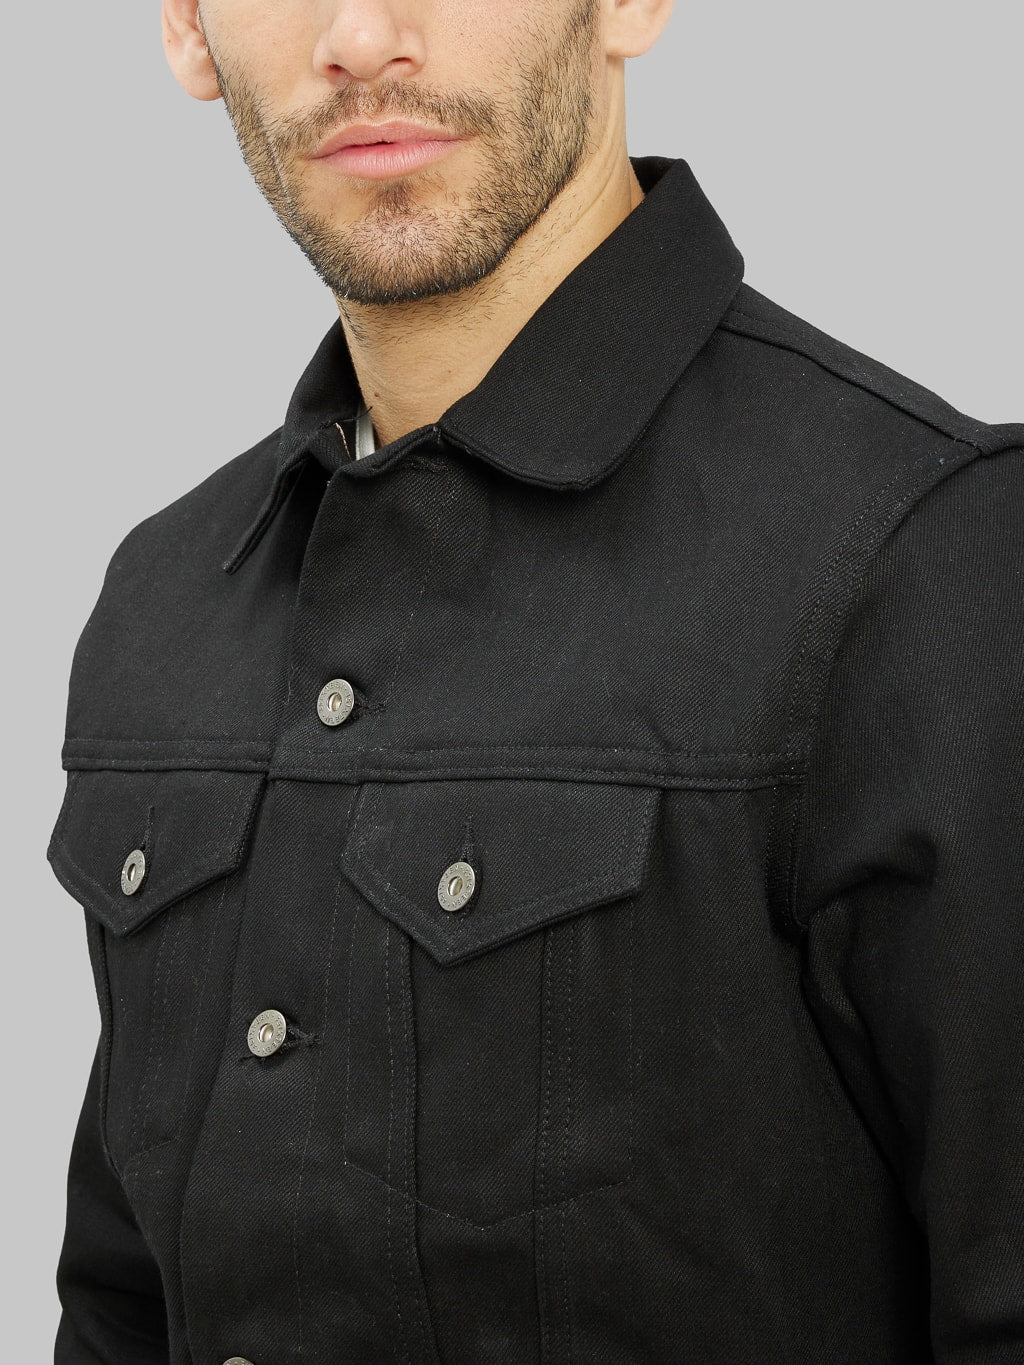 3sixteen type III denim jacket double black corduroy chest pocket 